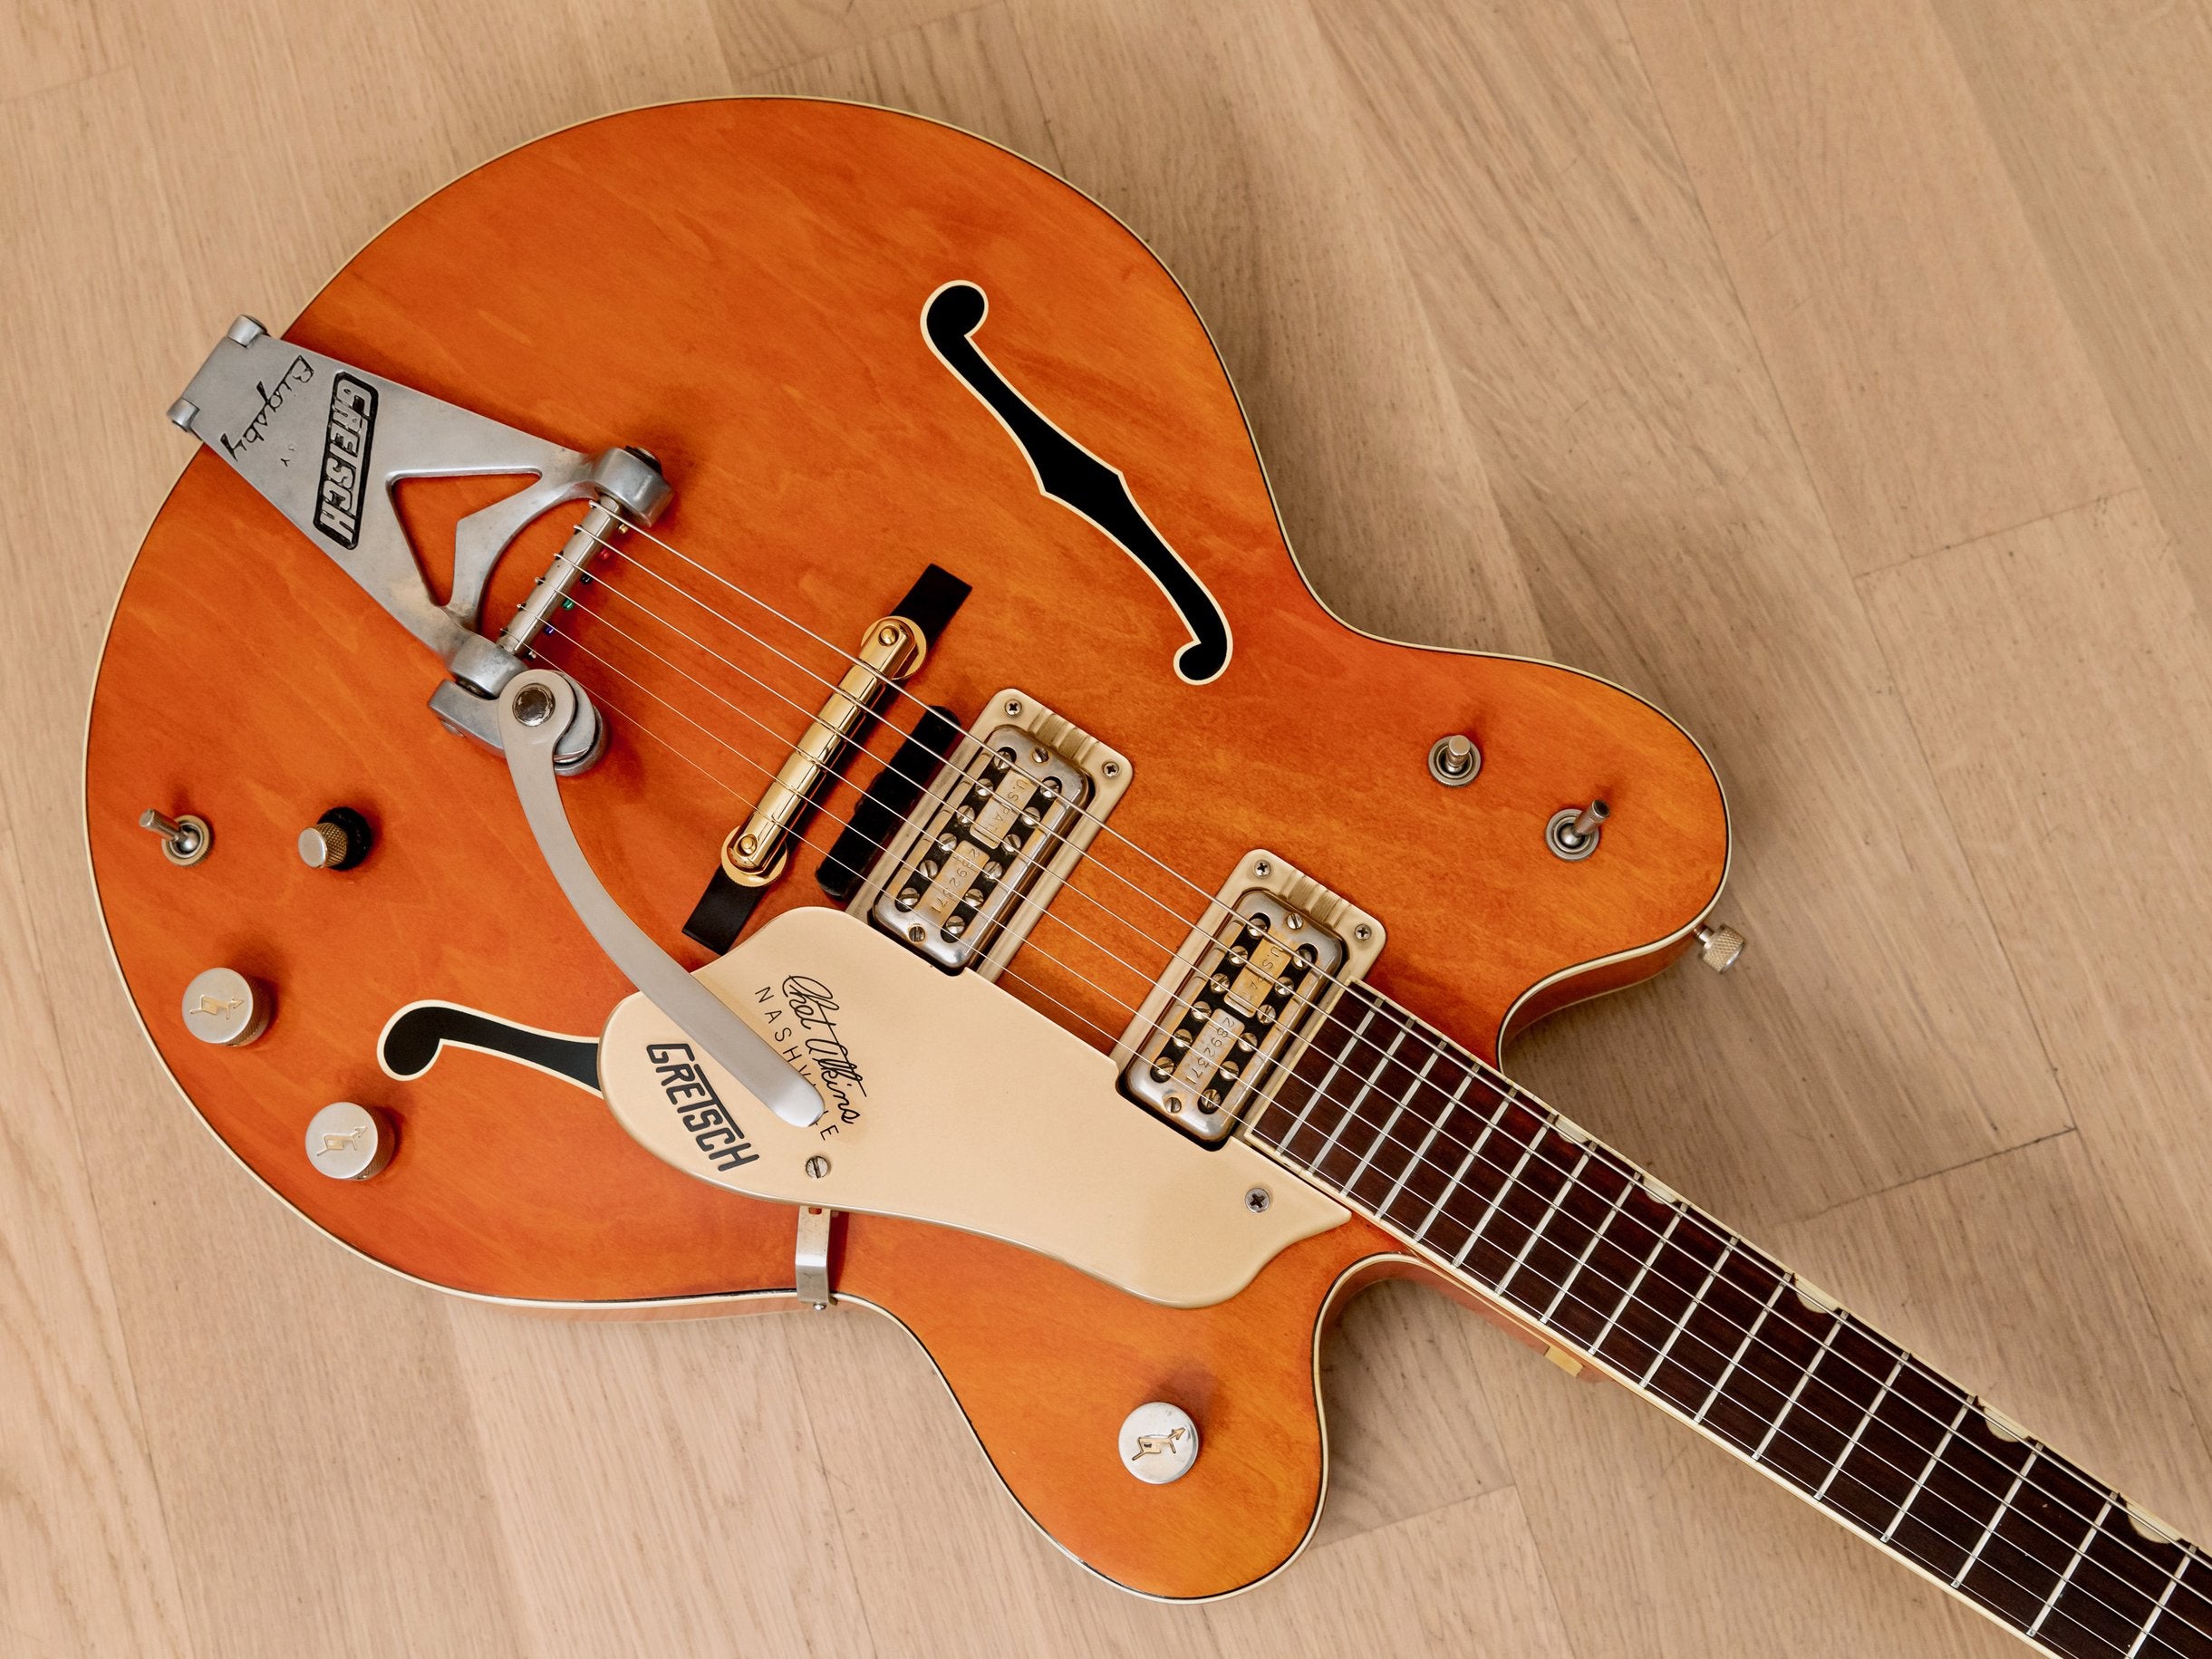 1967 Gretsch 6120 Chet Atkins Nashville Double Cutaway Vintage Guitar Western Orange w/ Case